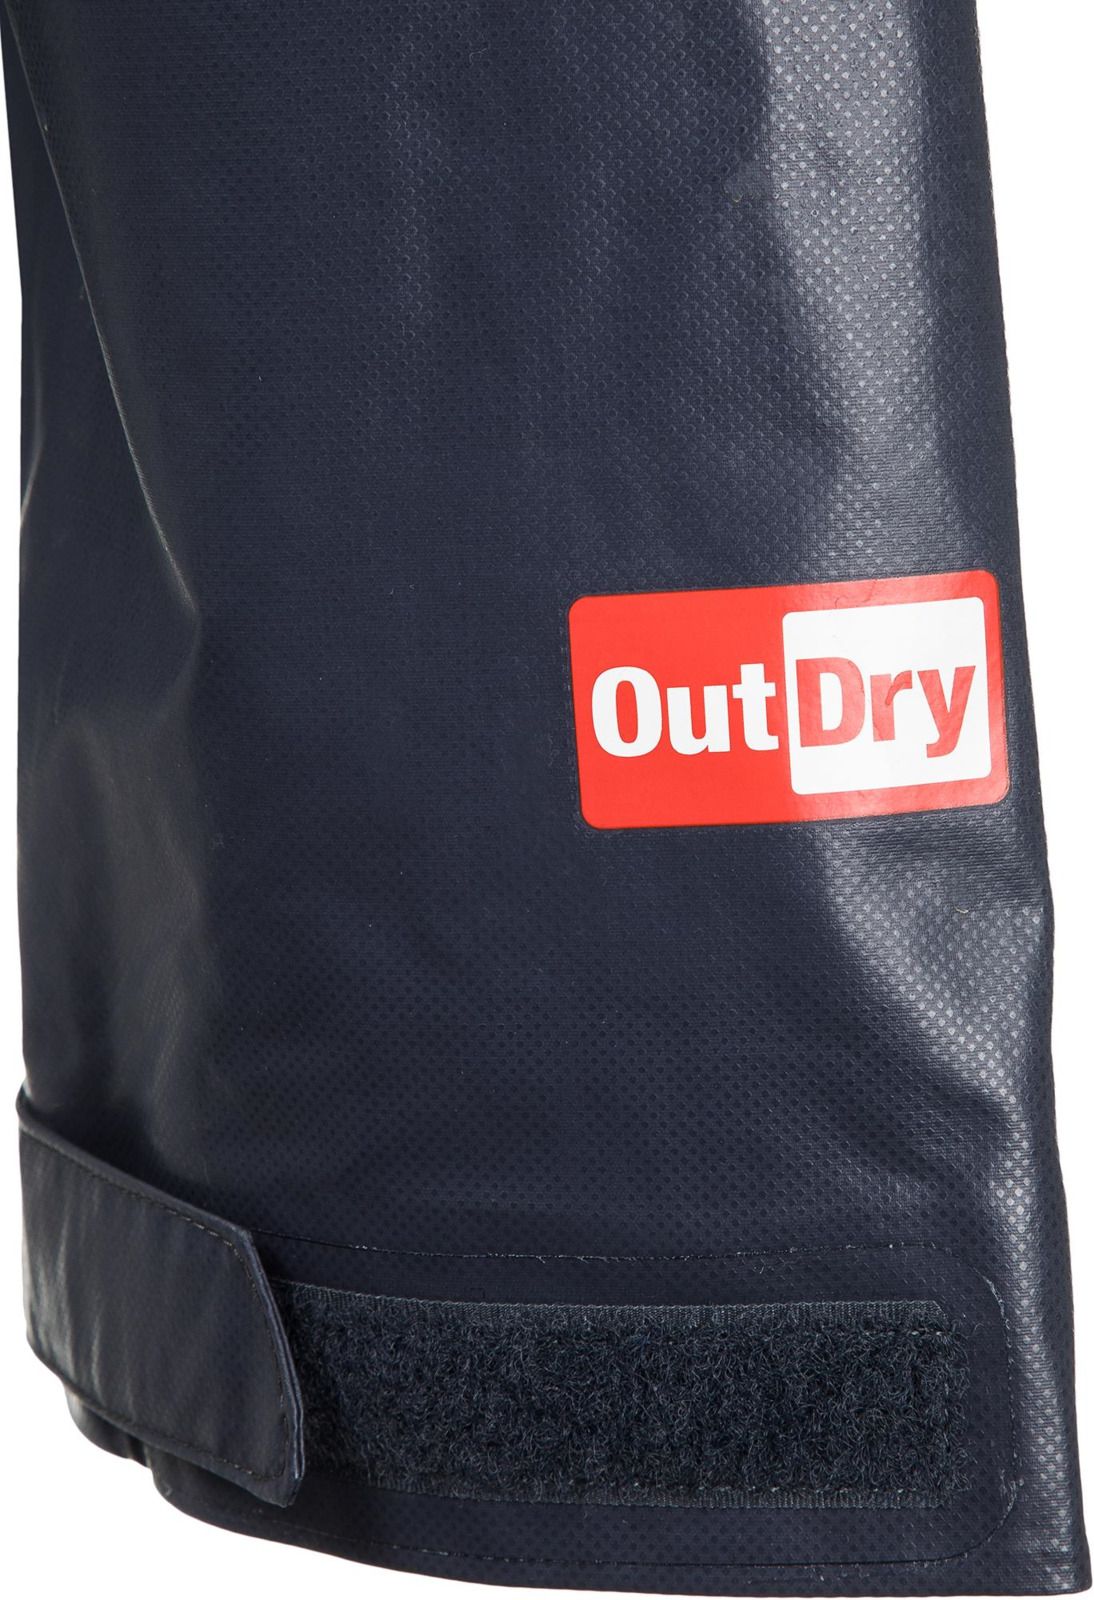   Columbia OutDry Ex Blitz Jacket, : -. 1849071-464.  XL (52/54)